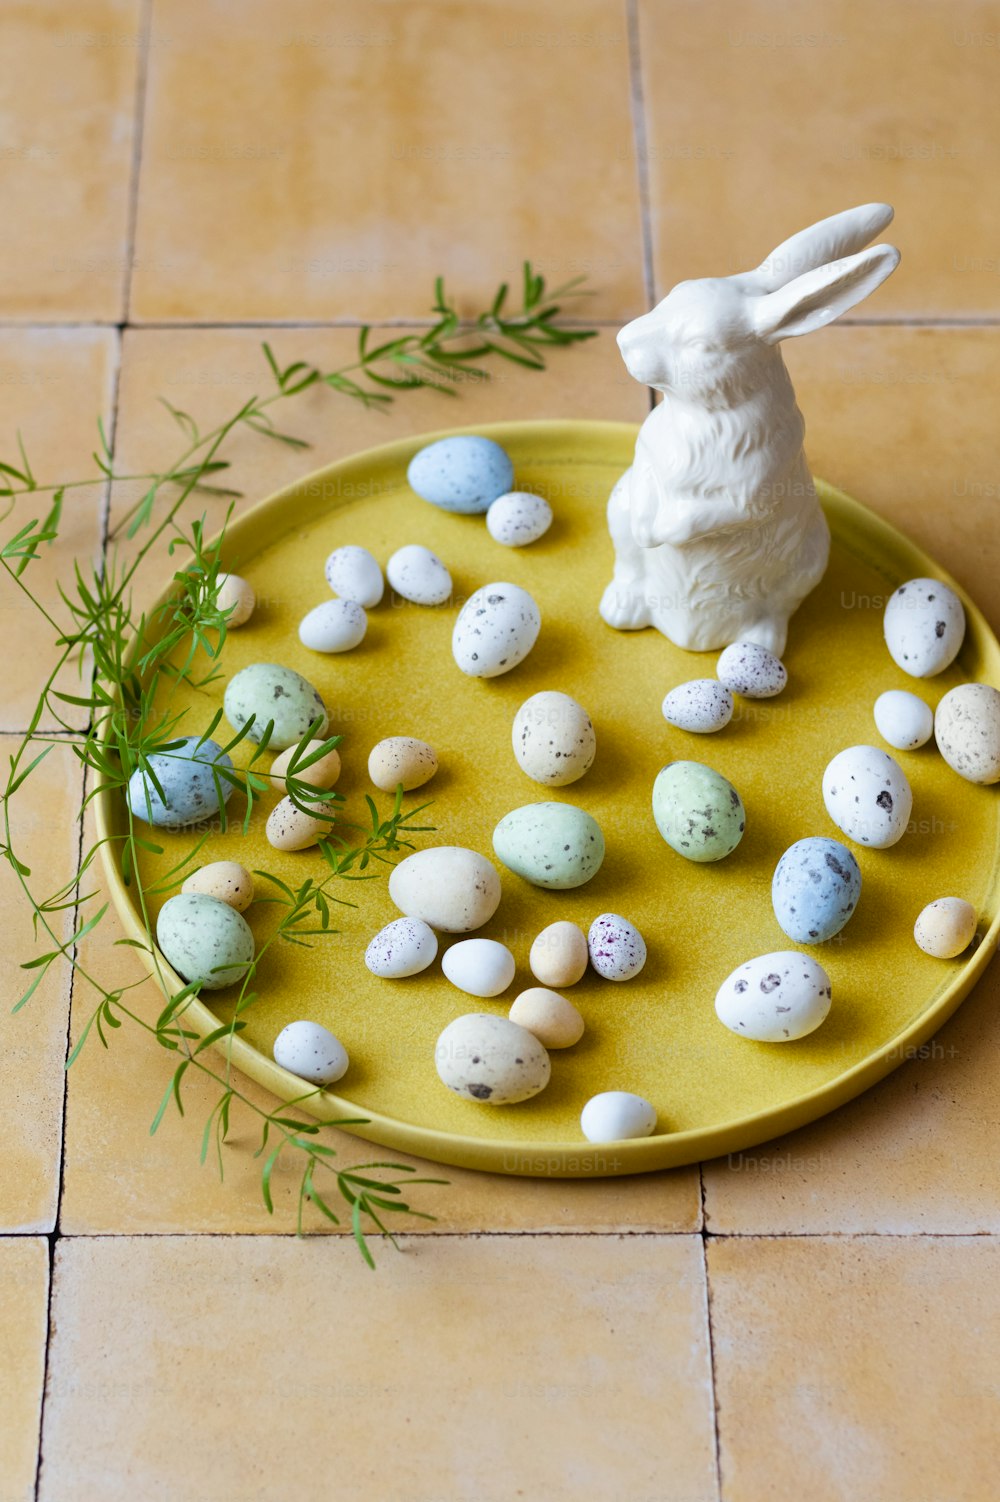 小さな卵とウサギの像をトッピングした黄色いプレート